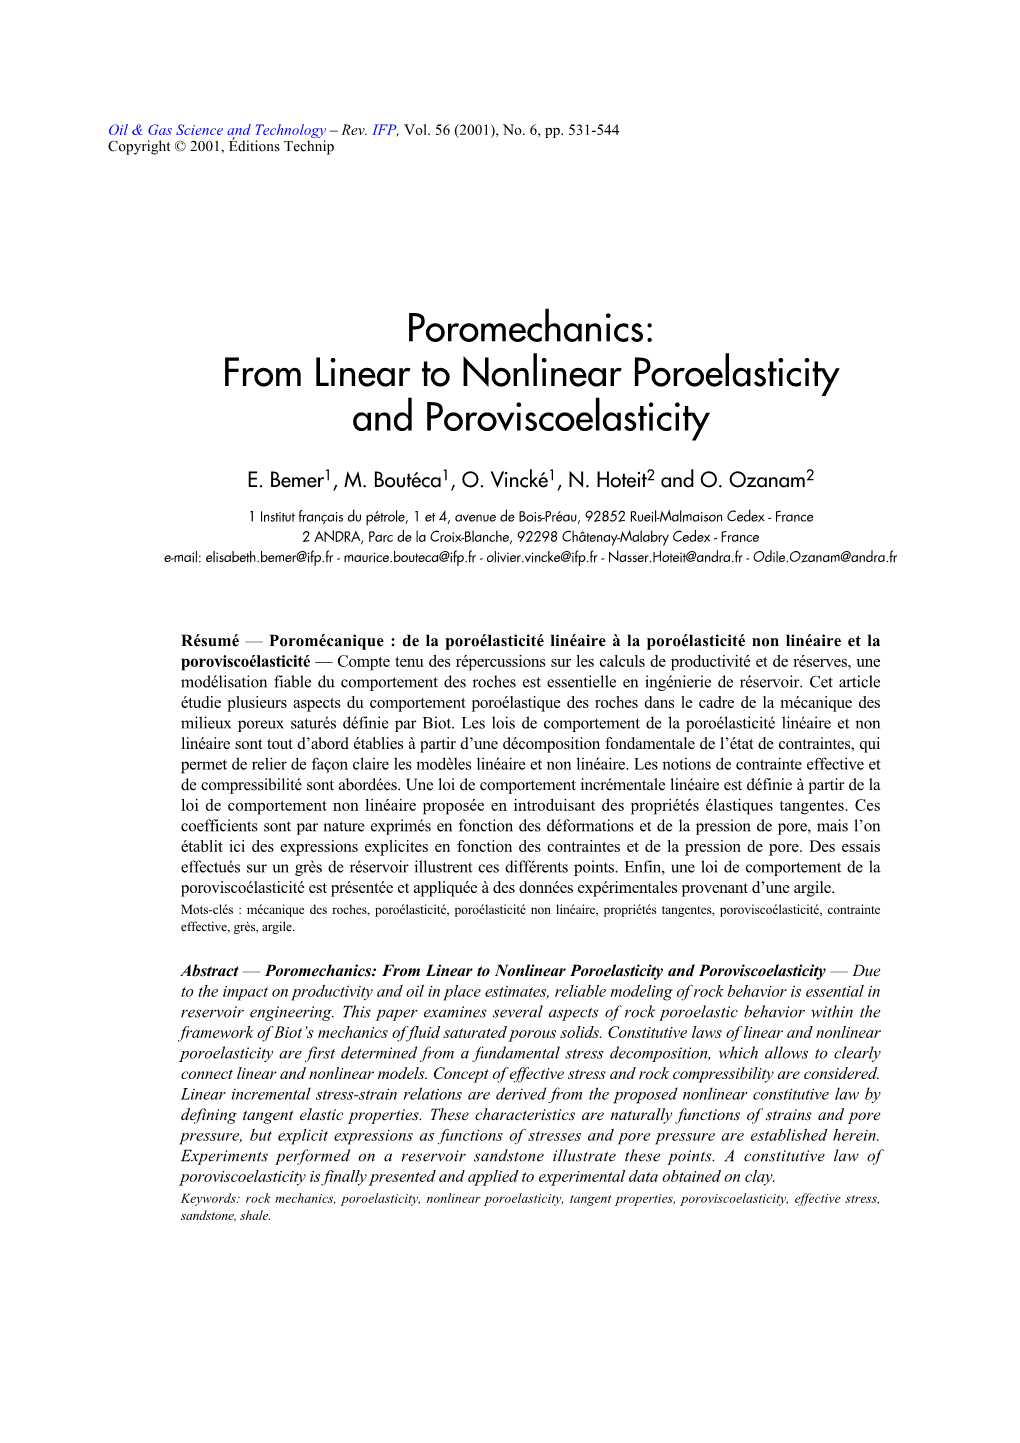 Poromechanics: from Linear to Nonlinear Poroelasticity and Poroviscoelasticity